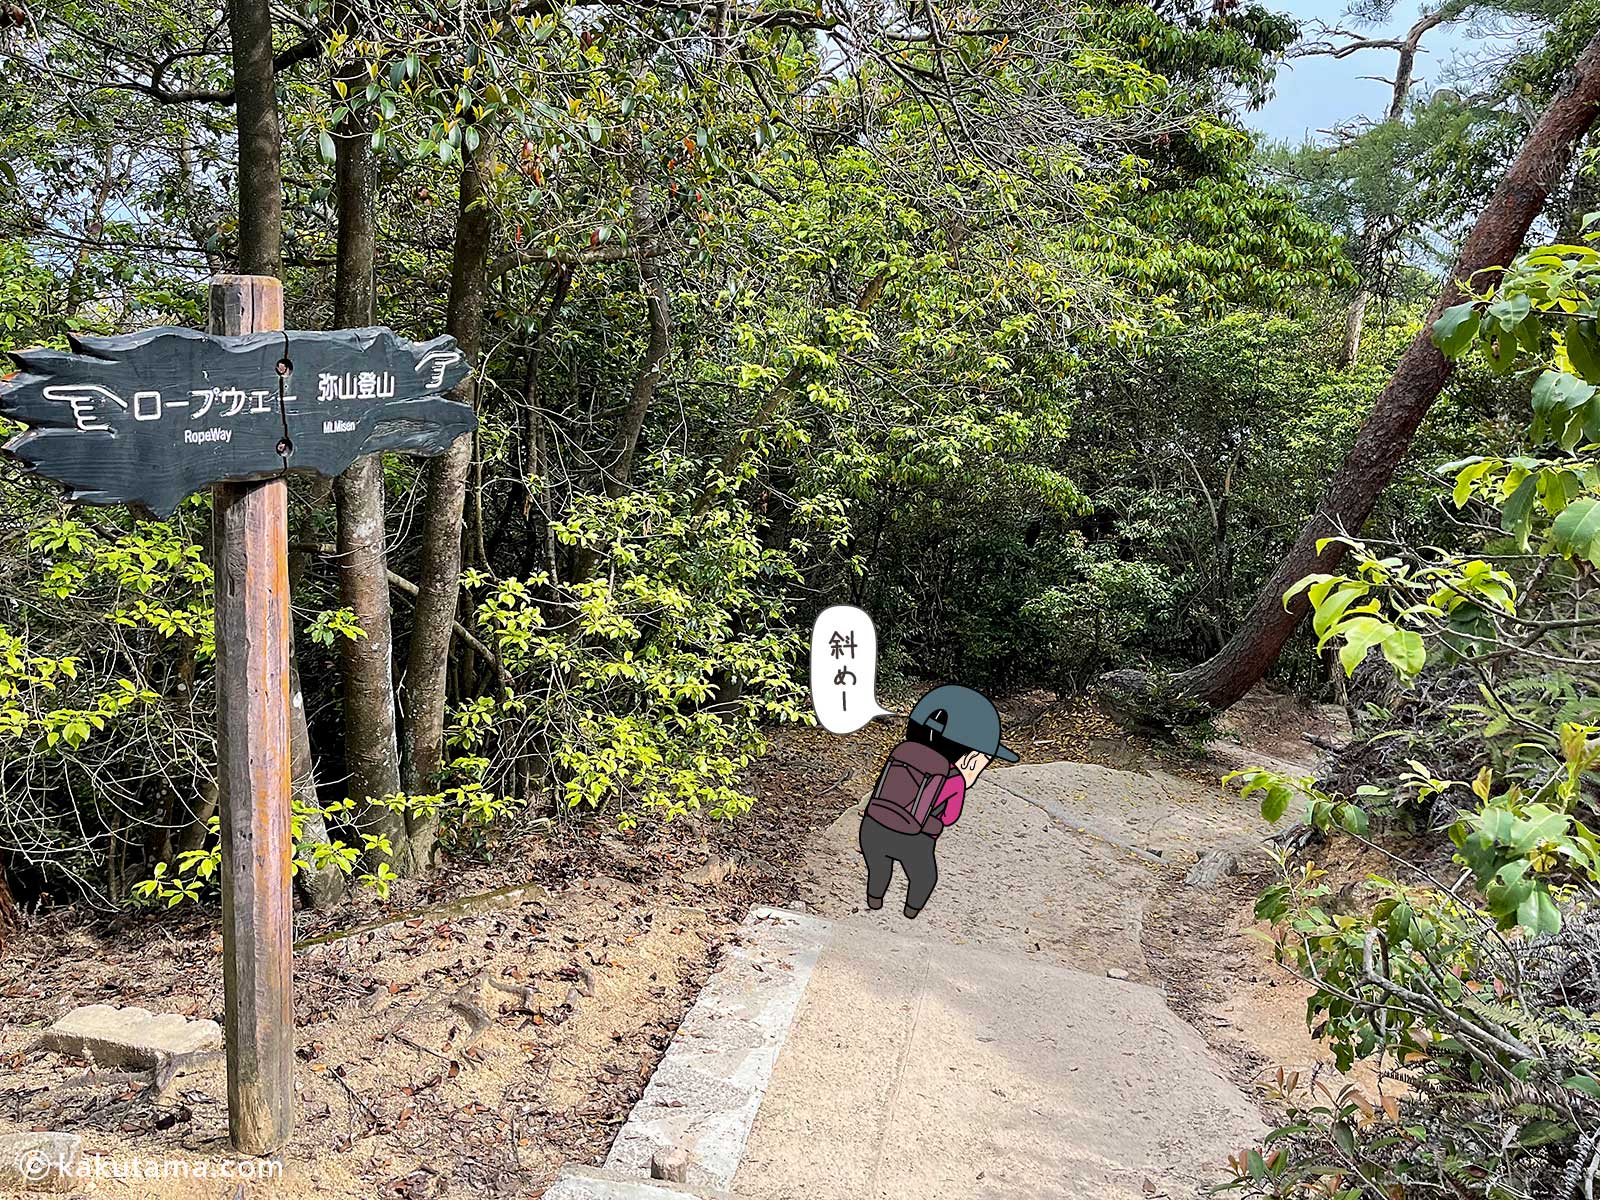 獅子岩駅から弥山へは一度降る写真と登山者のイラスト2